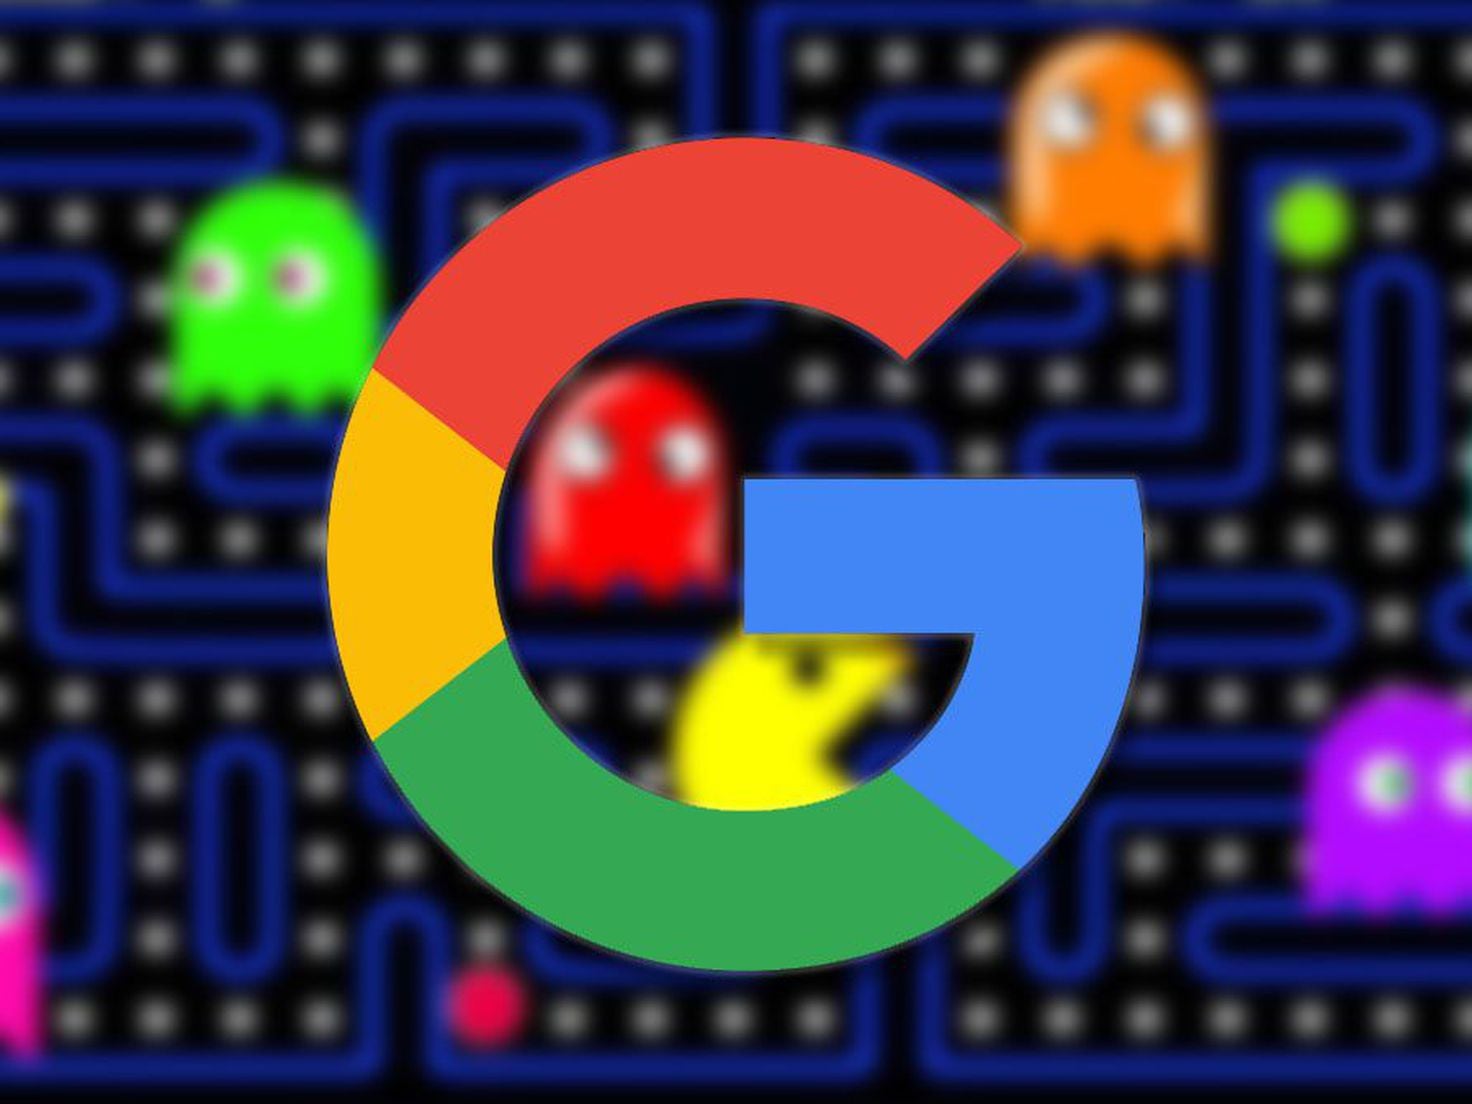 Cuáles son los juegos ocultos de Google?